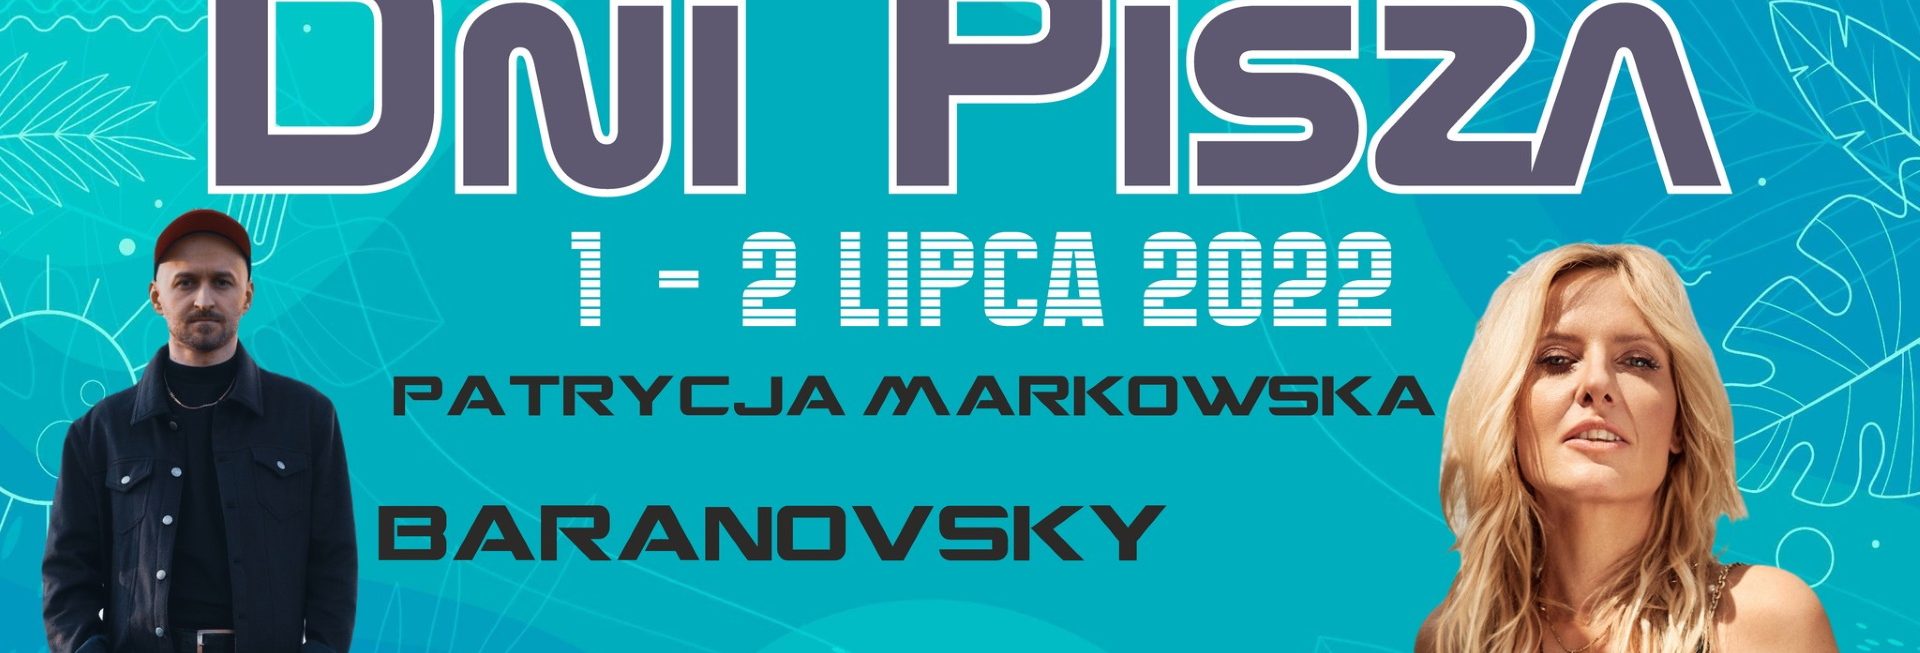 Plakat graficzny zapraszający do Pisza na Dni Pisza 2022. 